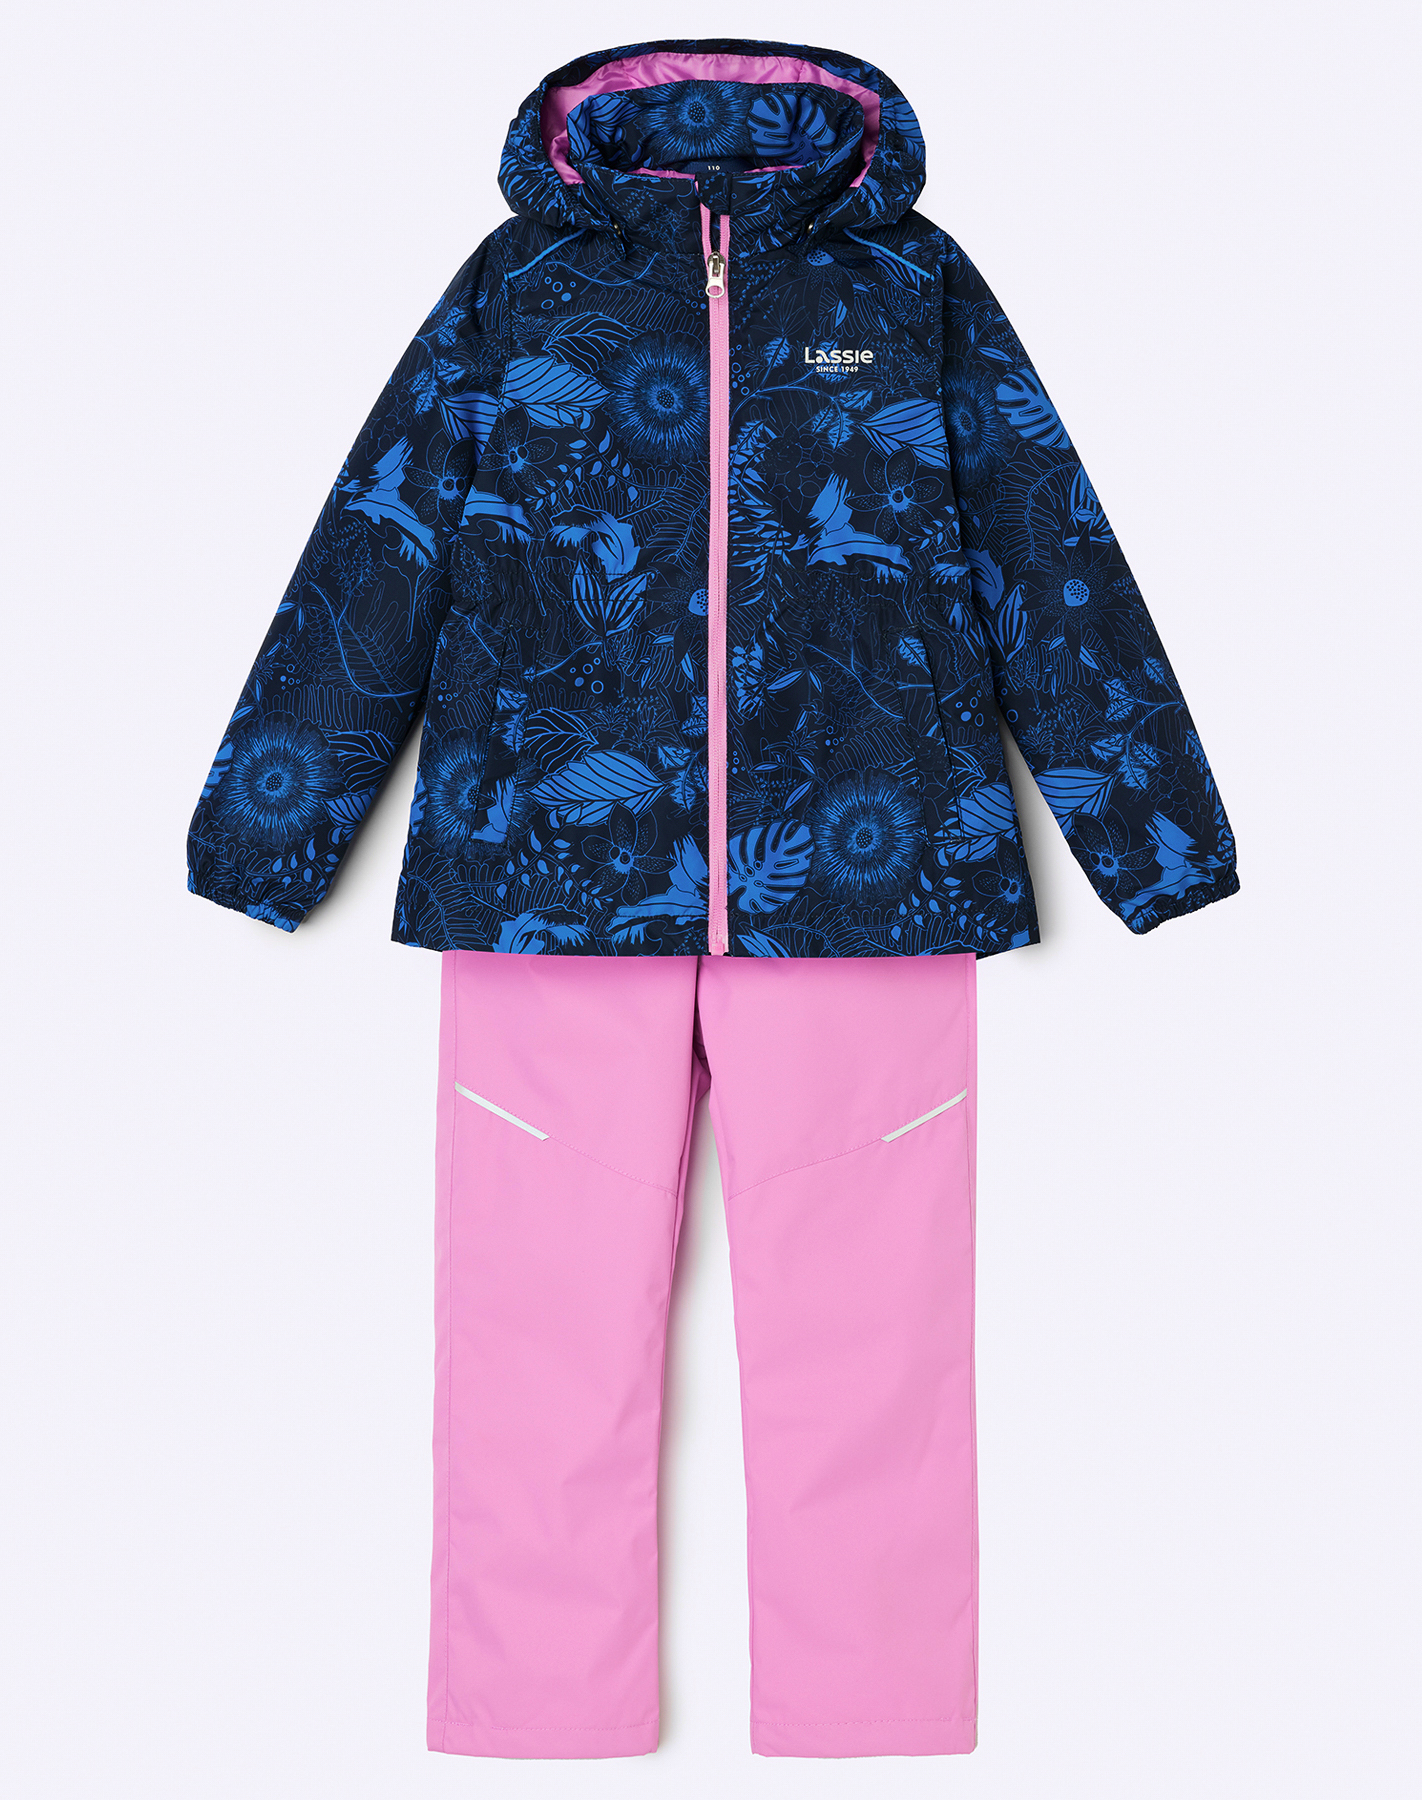 Комплект верхней одежды детский Lassie Manna 7100042A, 4741-синий с рисунком  розовый, 140